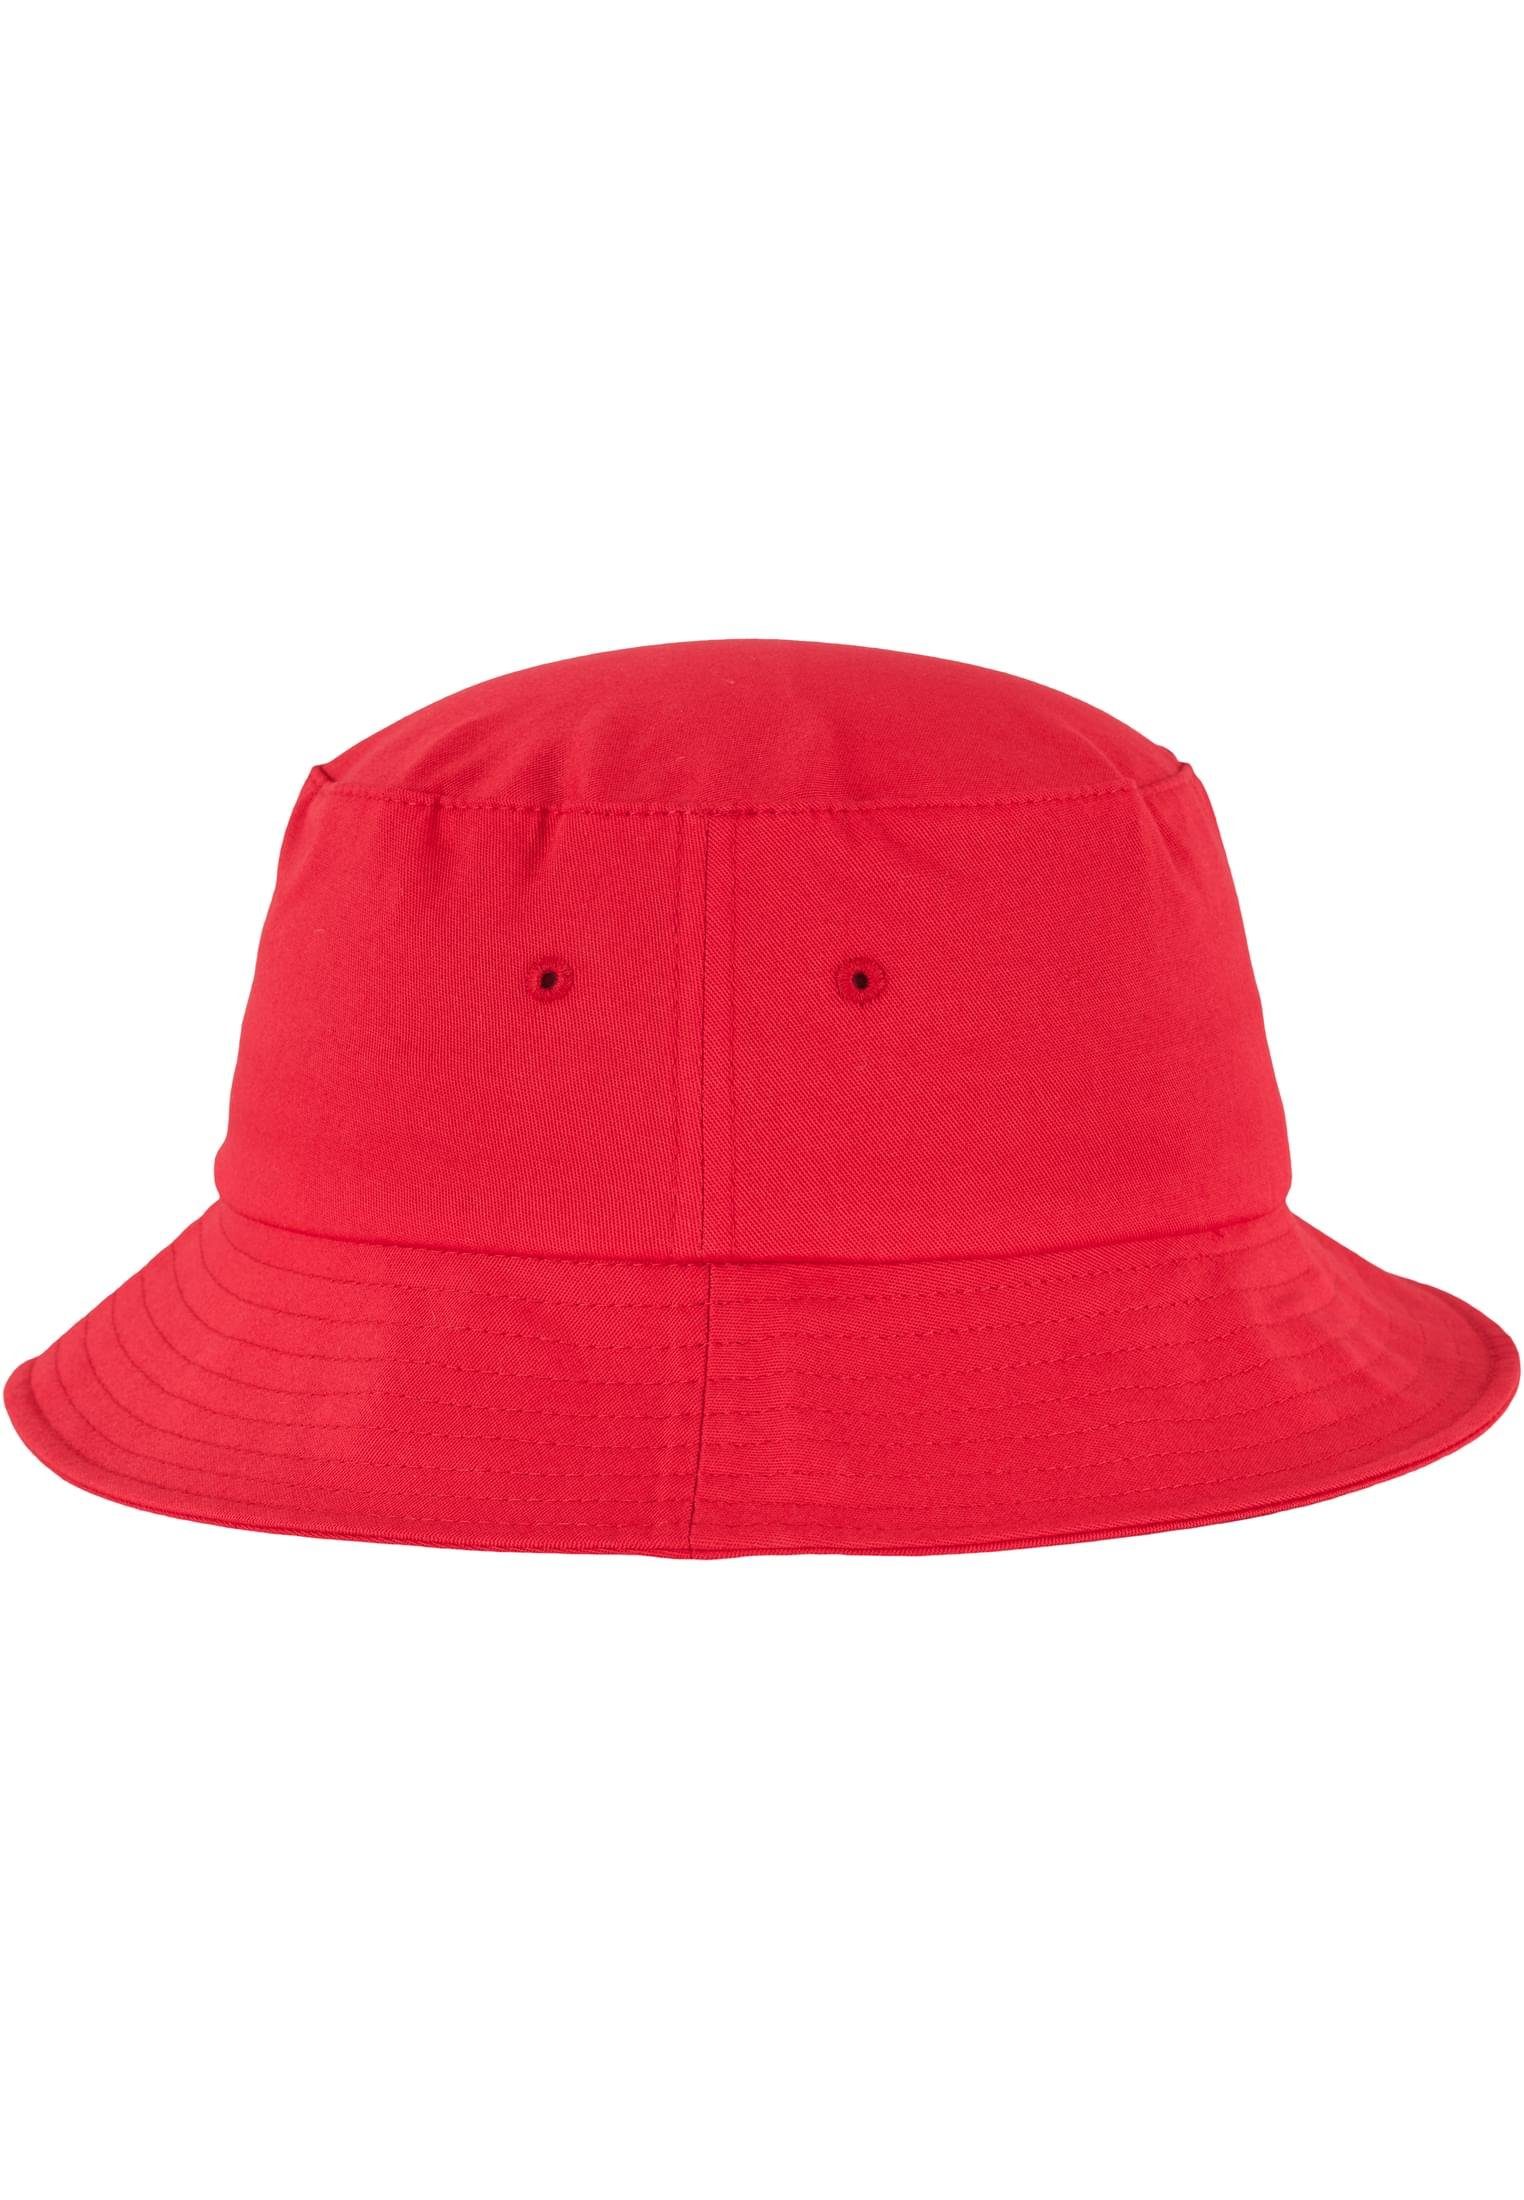 Hat Cap Bucket Cotton Twill Flex Flexfit Flexfit Accessoires red